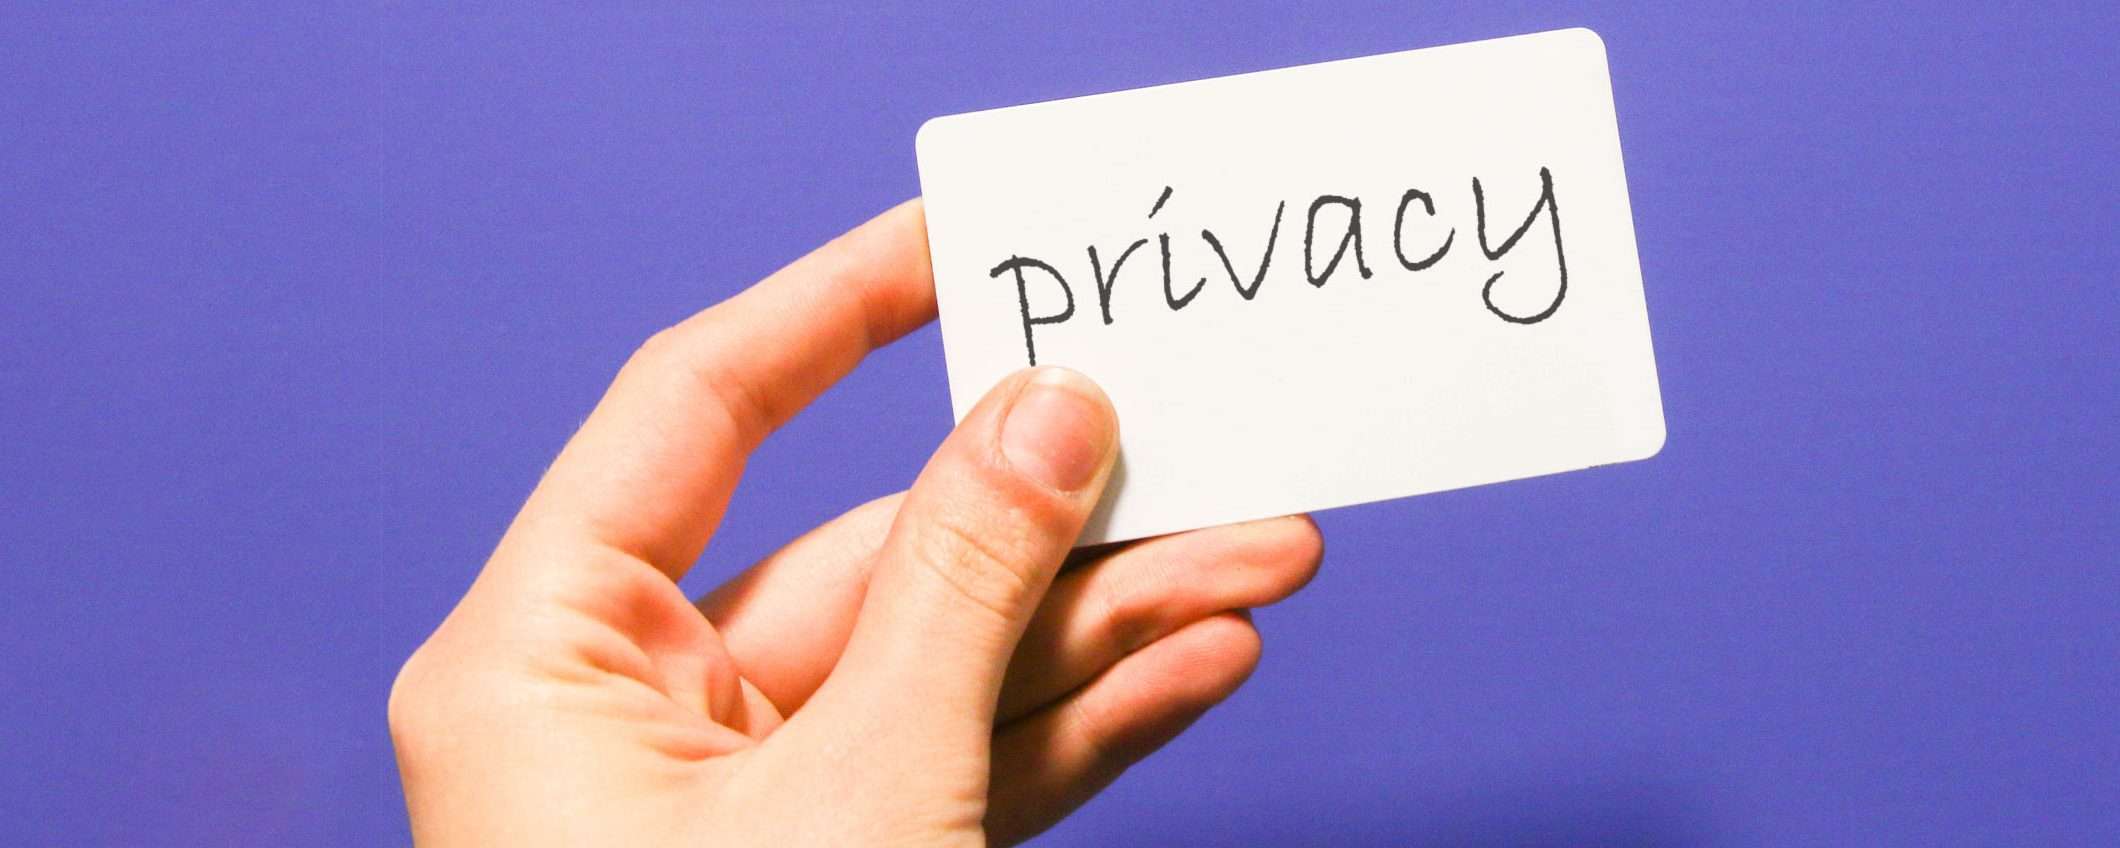 Proton chiede di approvare una legge per la privacy